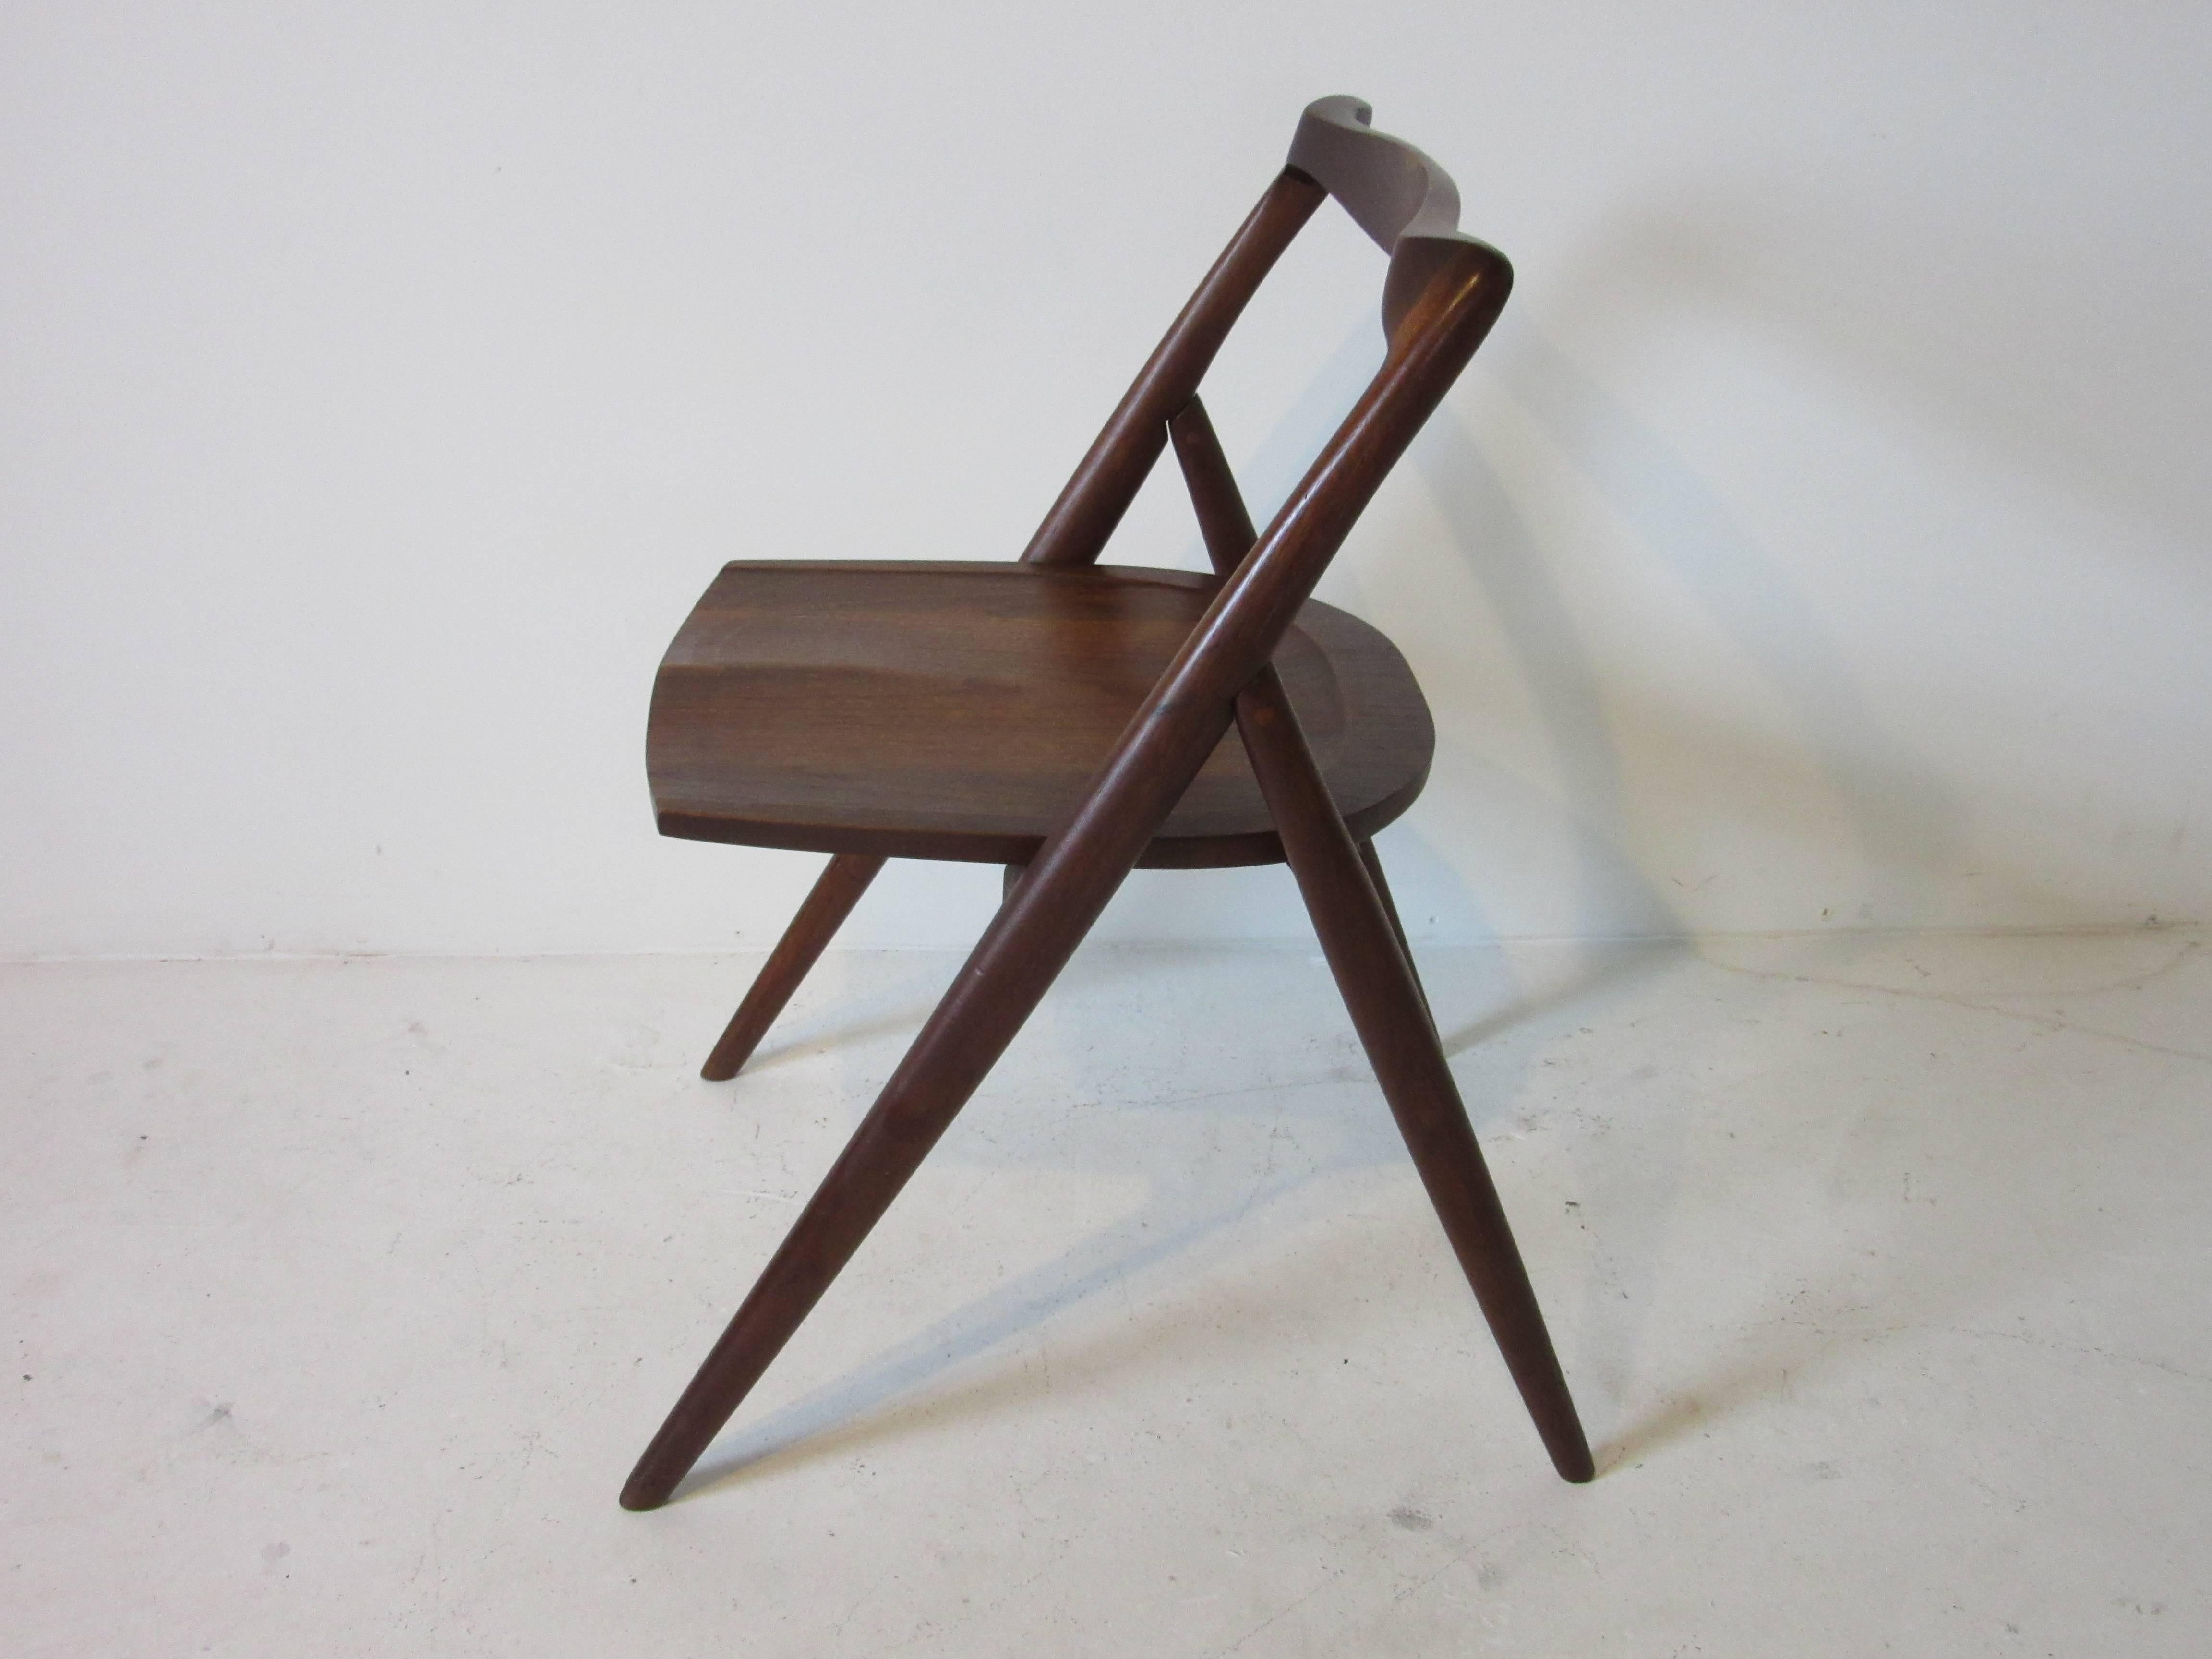 Ein im Studio gefertigter, schwarz geölter, skulpturaler Stuhl aus amerikanischem Nussbaum in der Art von George Nakashima, entworfen und hergestellt von dem japanischen Amerikaner George Suyeoka, Möbelbauer, Künstler und Schriftsteller. Der in